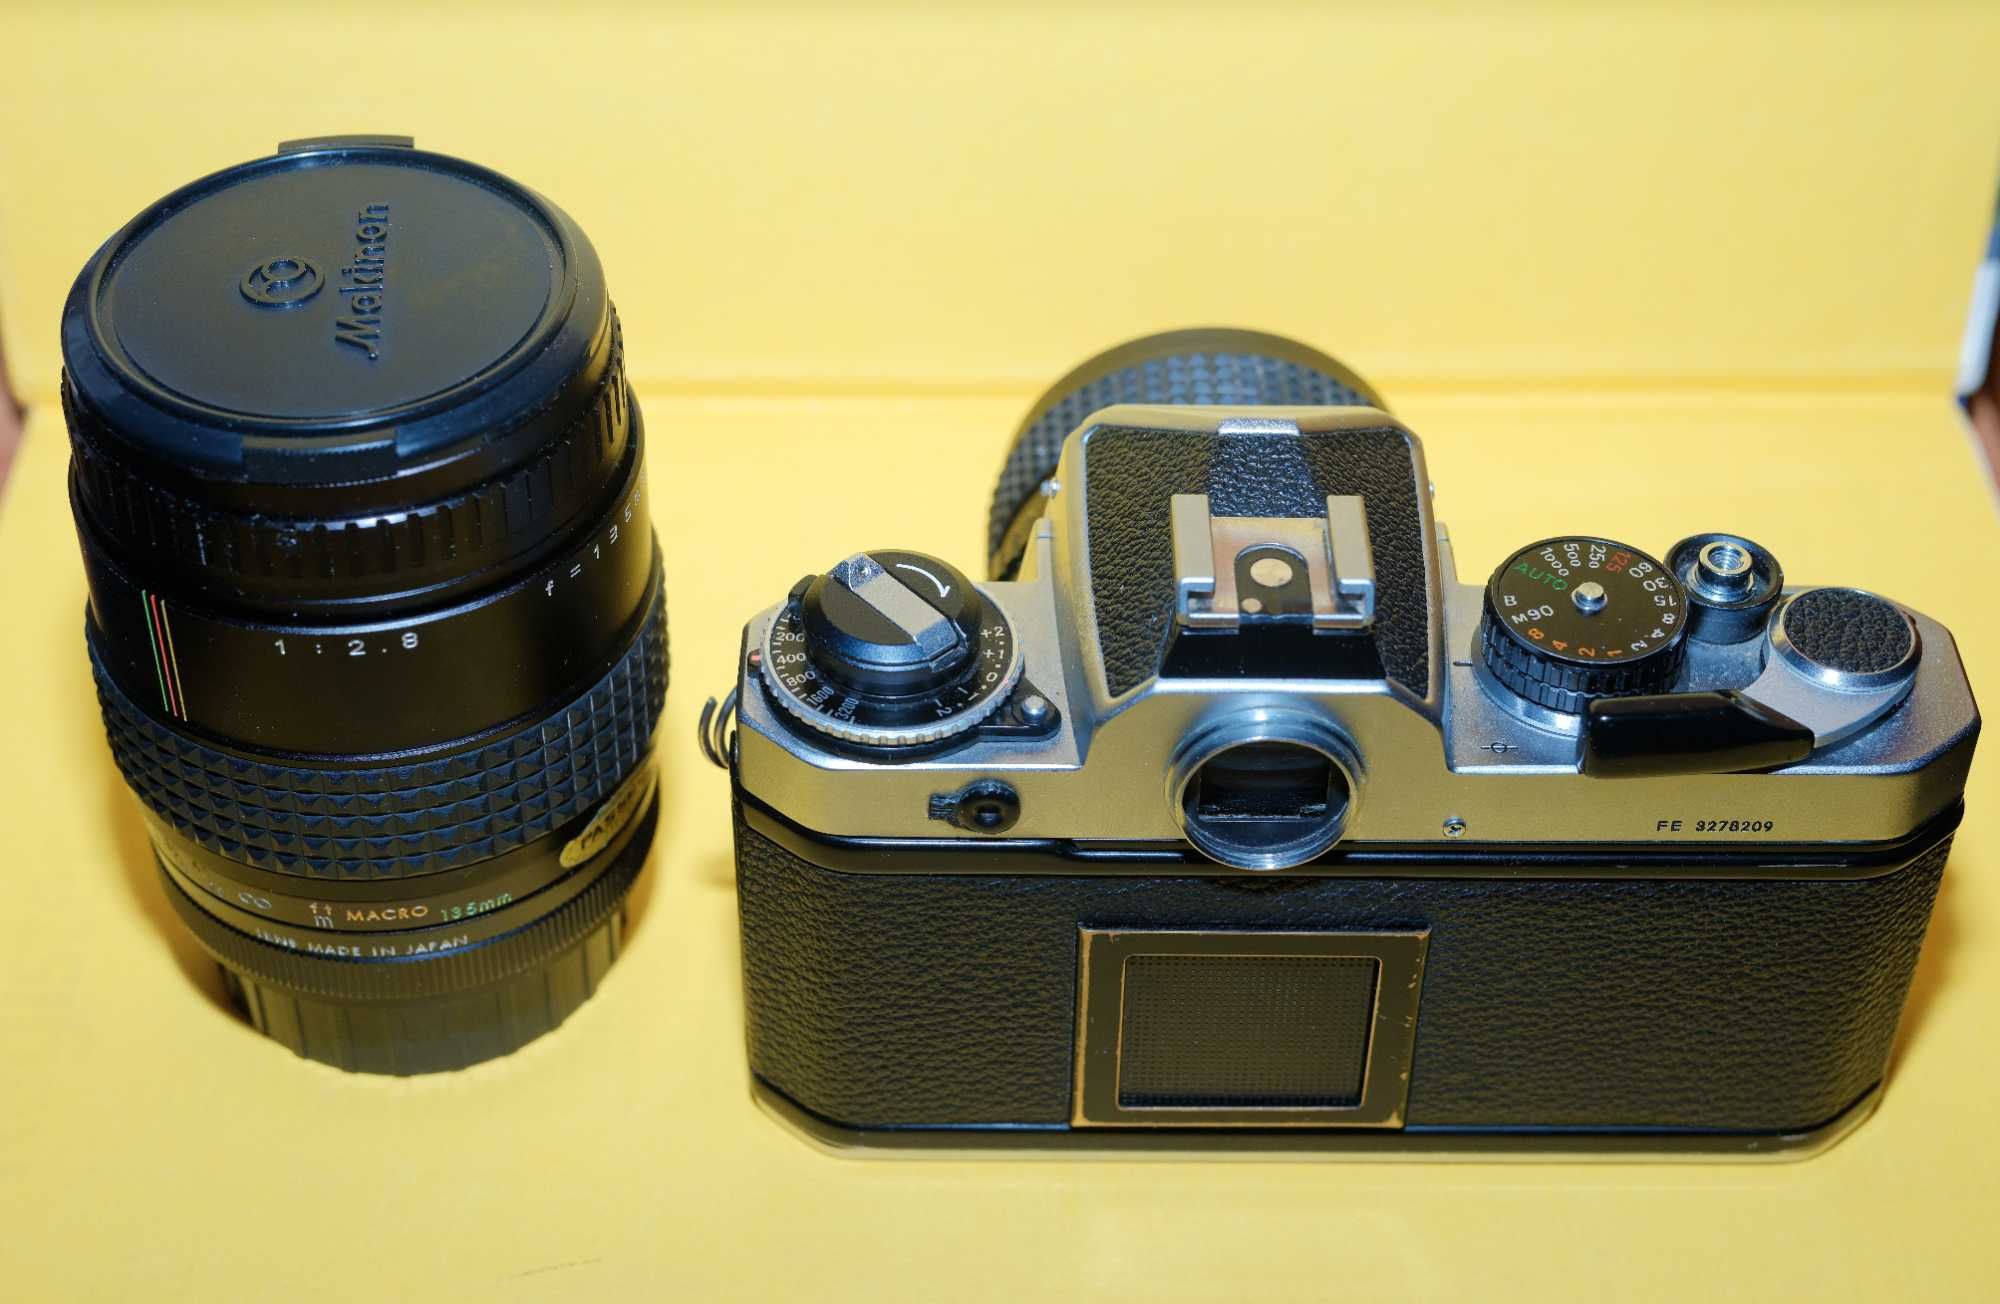 Nikon FE cu obiectiv Osawa 28mm si Makinon 135mm